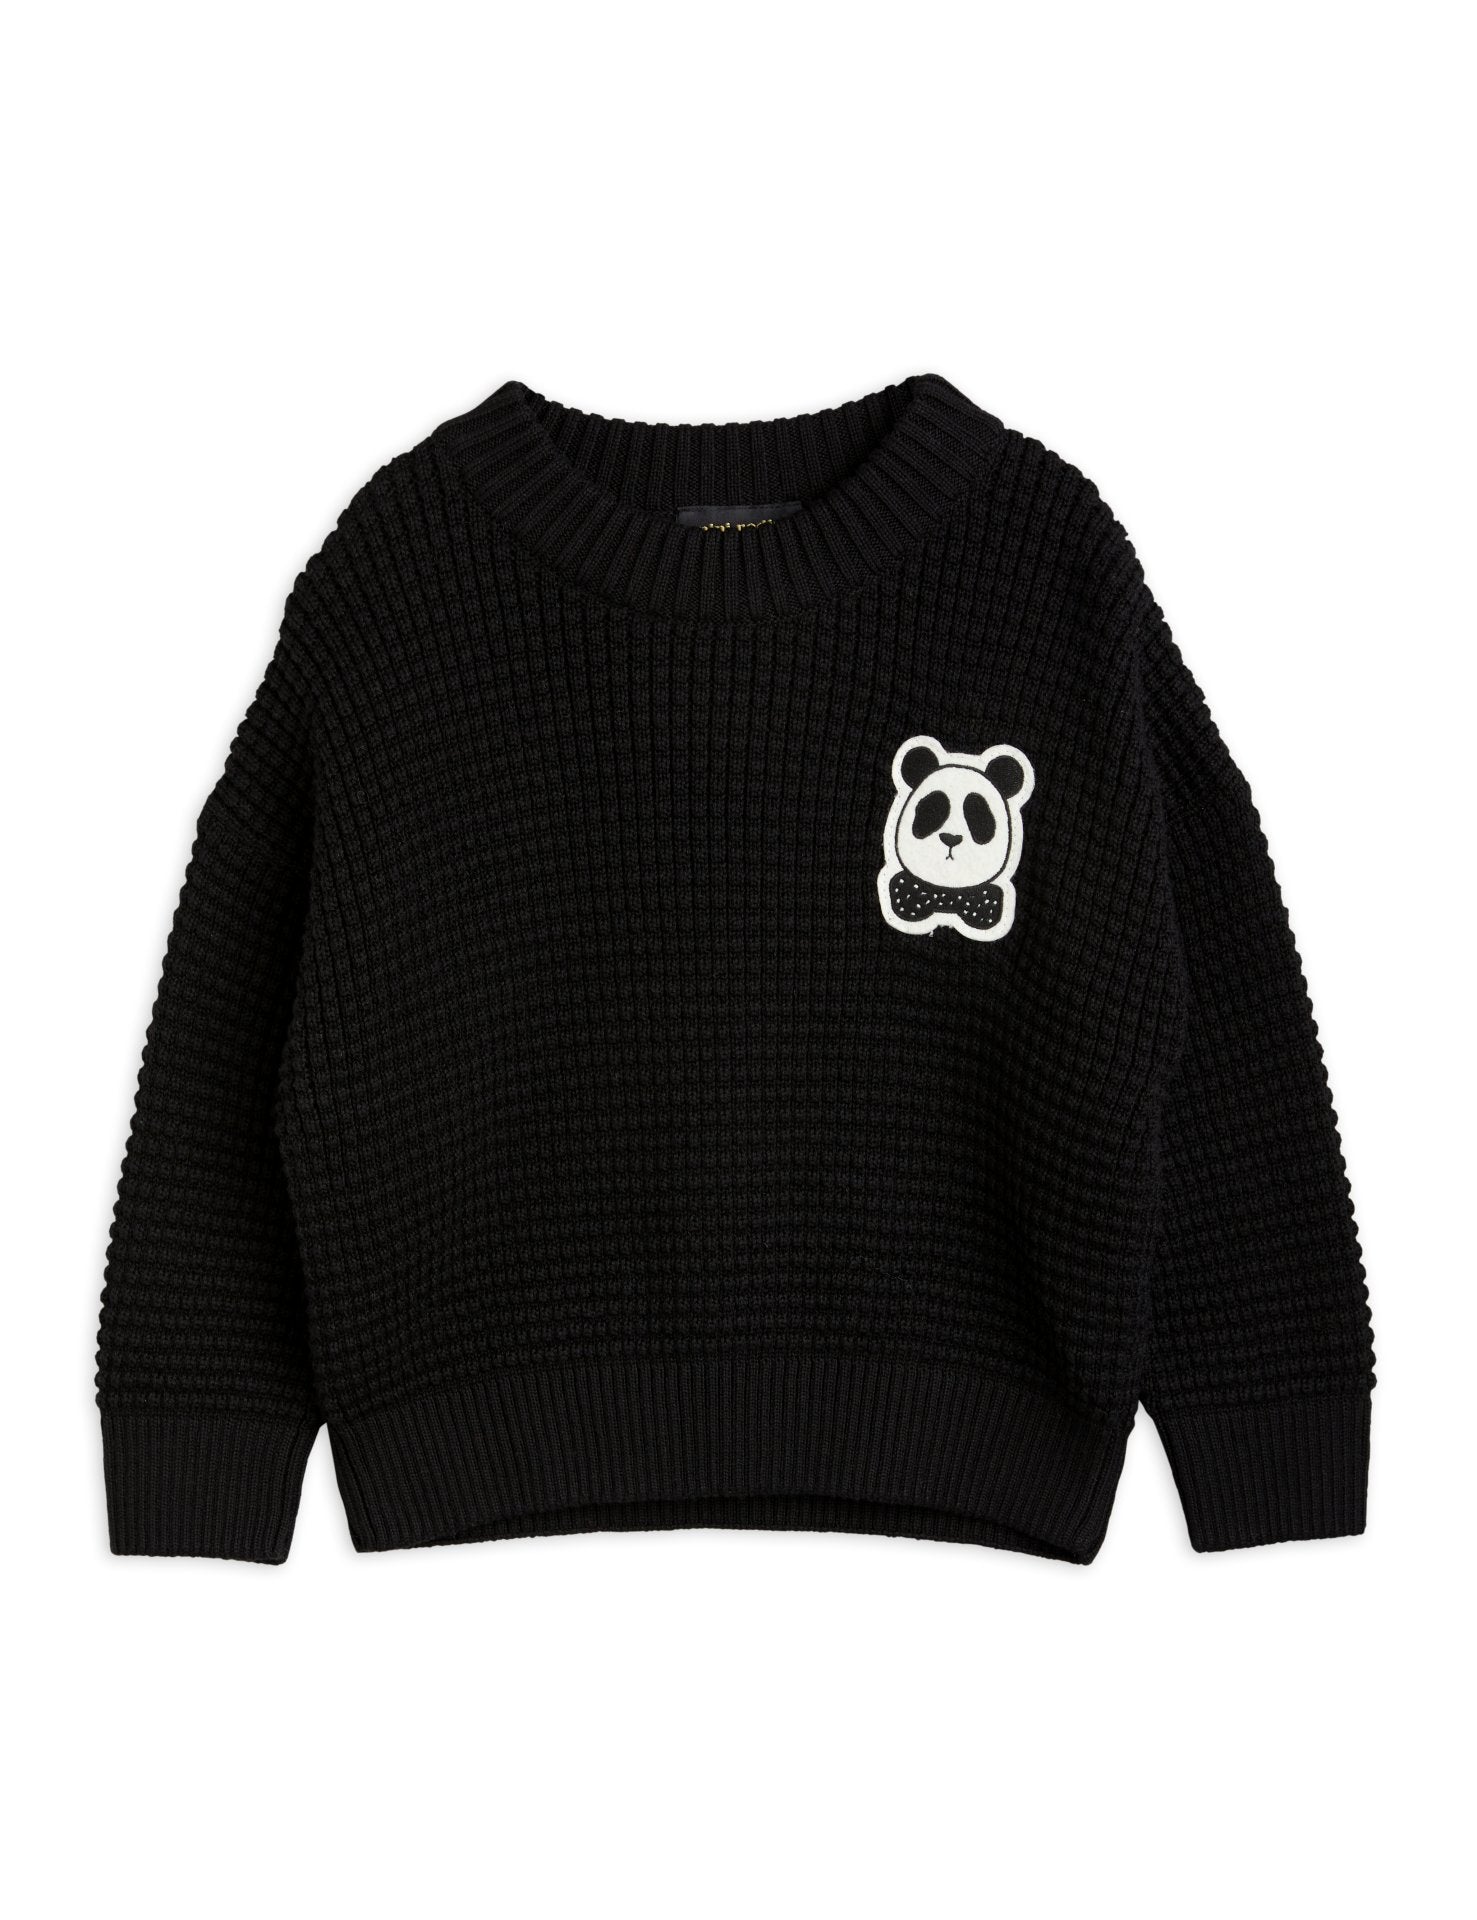 Panda knitted sweater